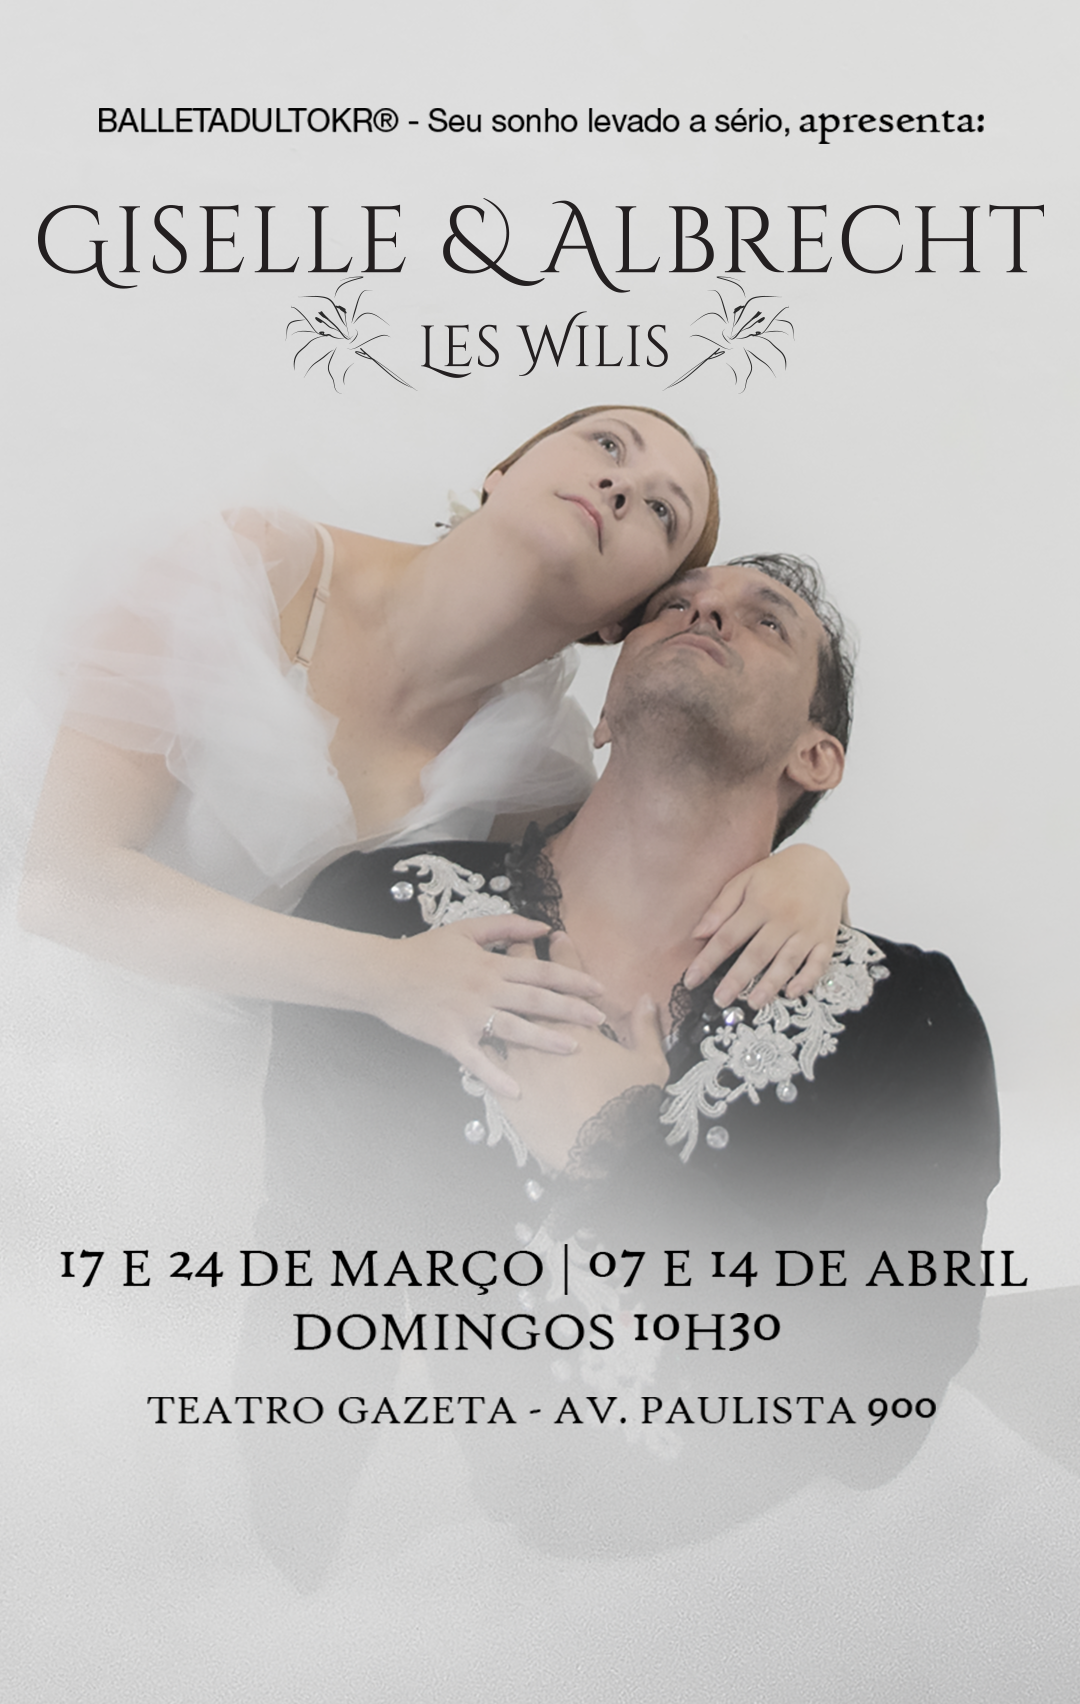 Cartaz do espetáculo de ballet clássico - Giselle & Albrecht - Les Wilis